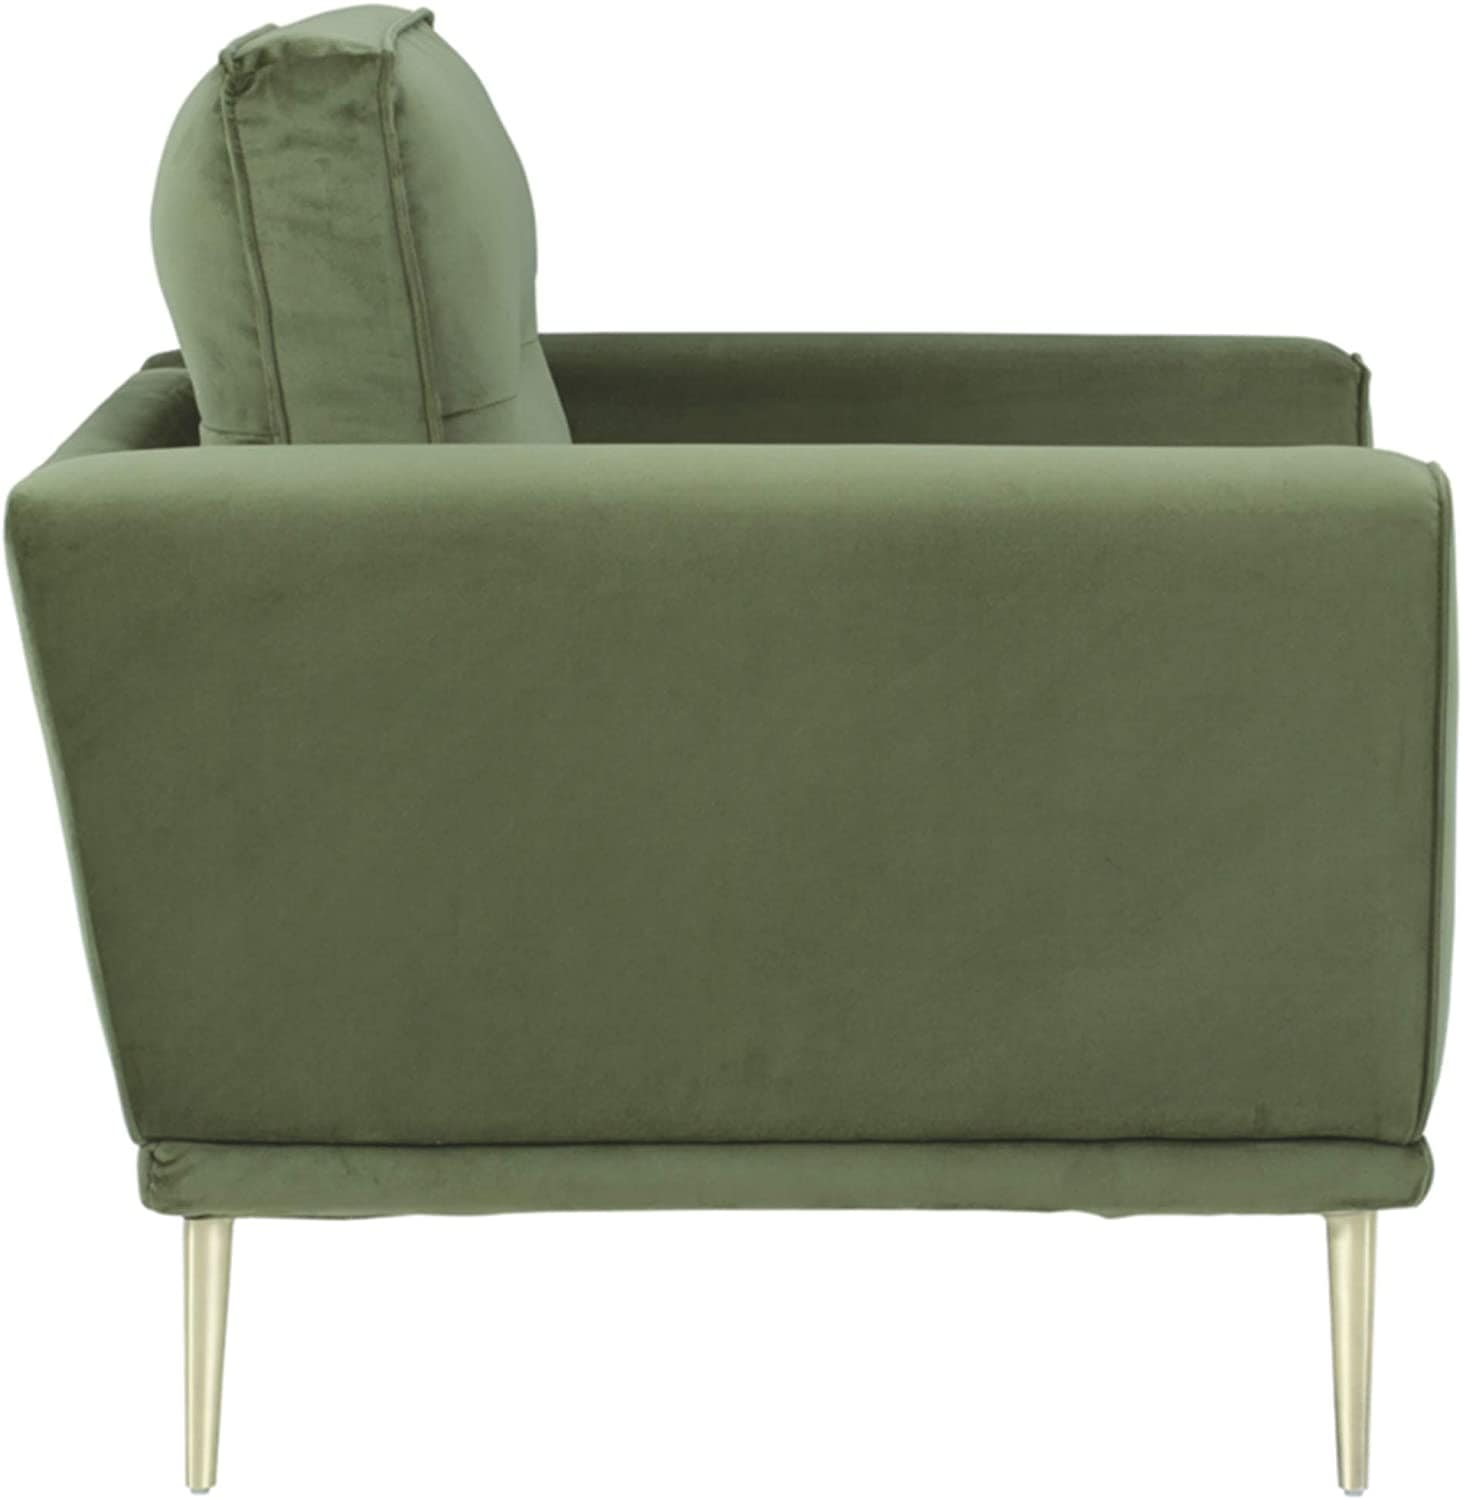 Velvet Modern Fabric Arm Chair For office, living room, bedroom